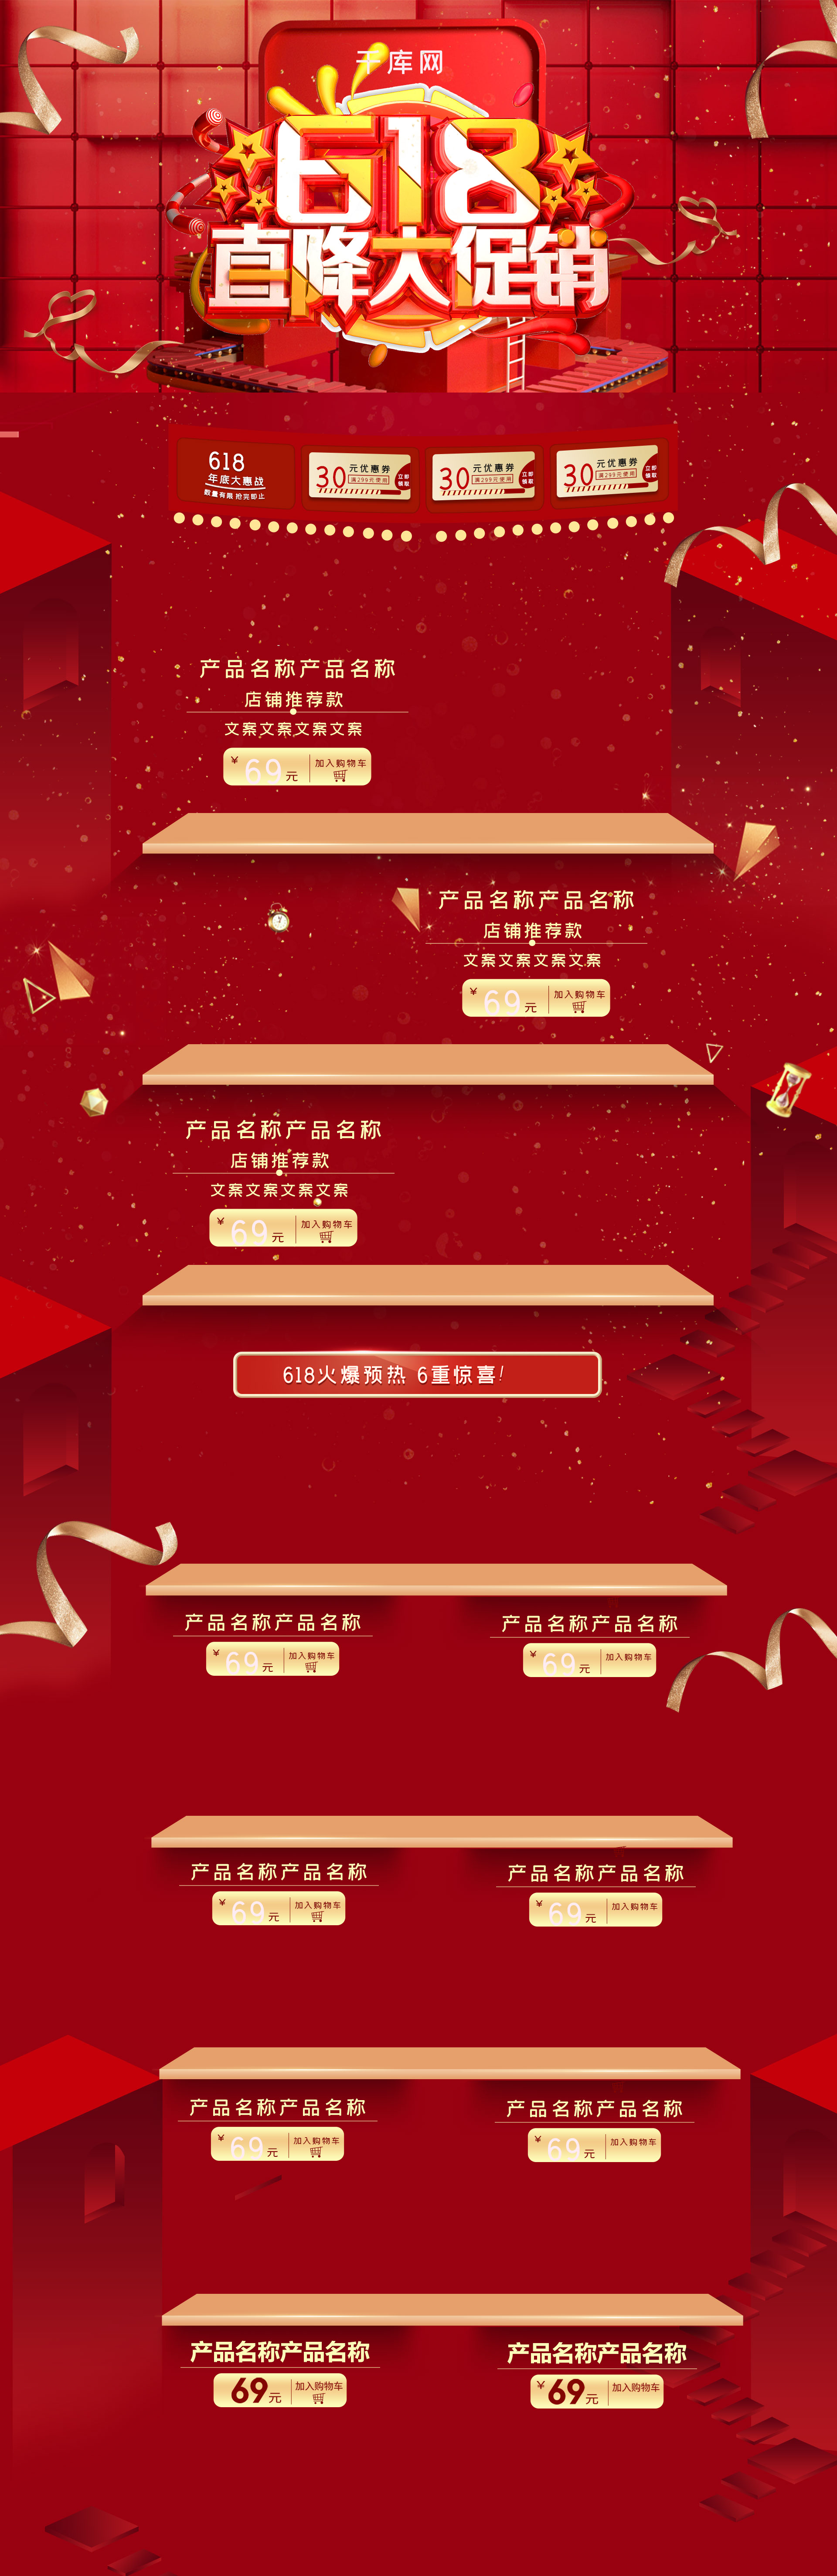 618直降大促销C4D炫酷红色电商淘宝首页模板图片